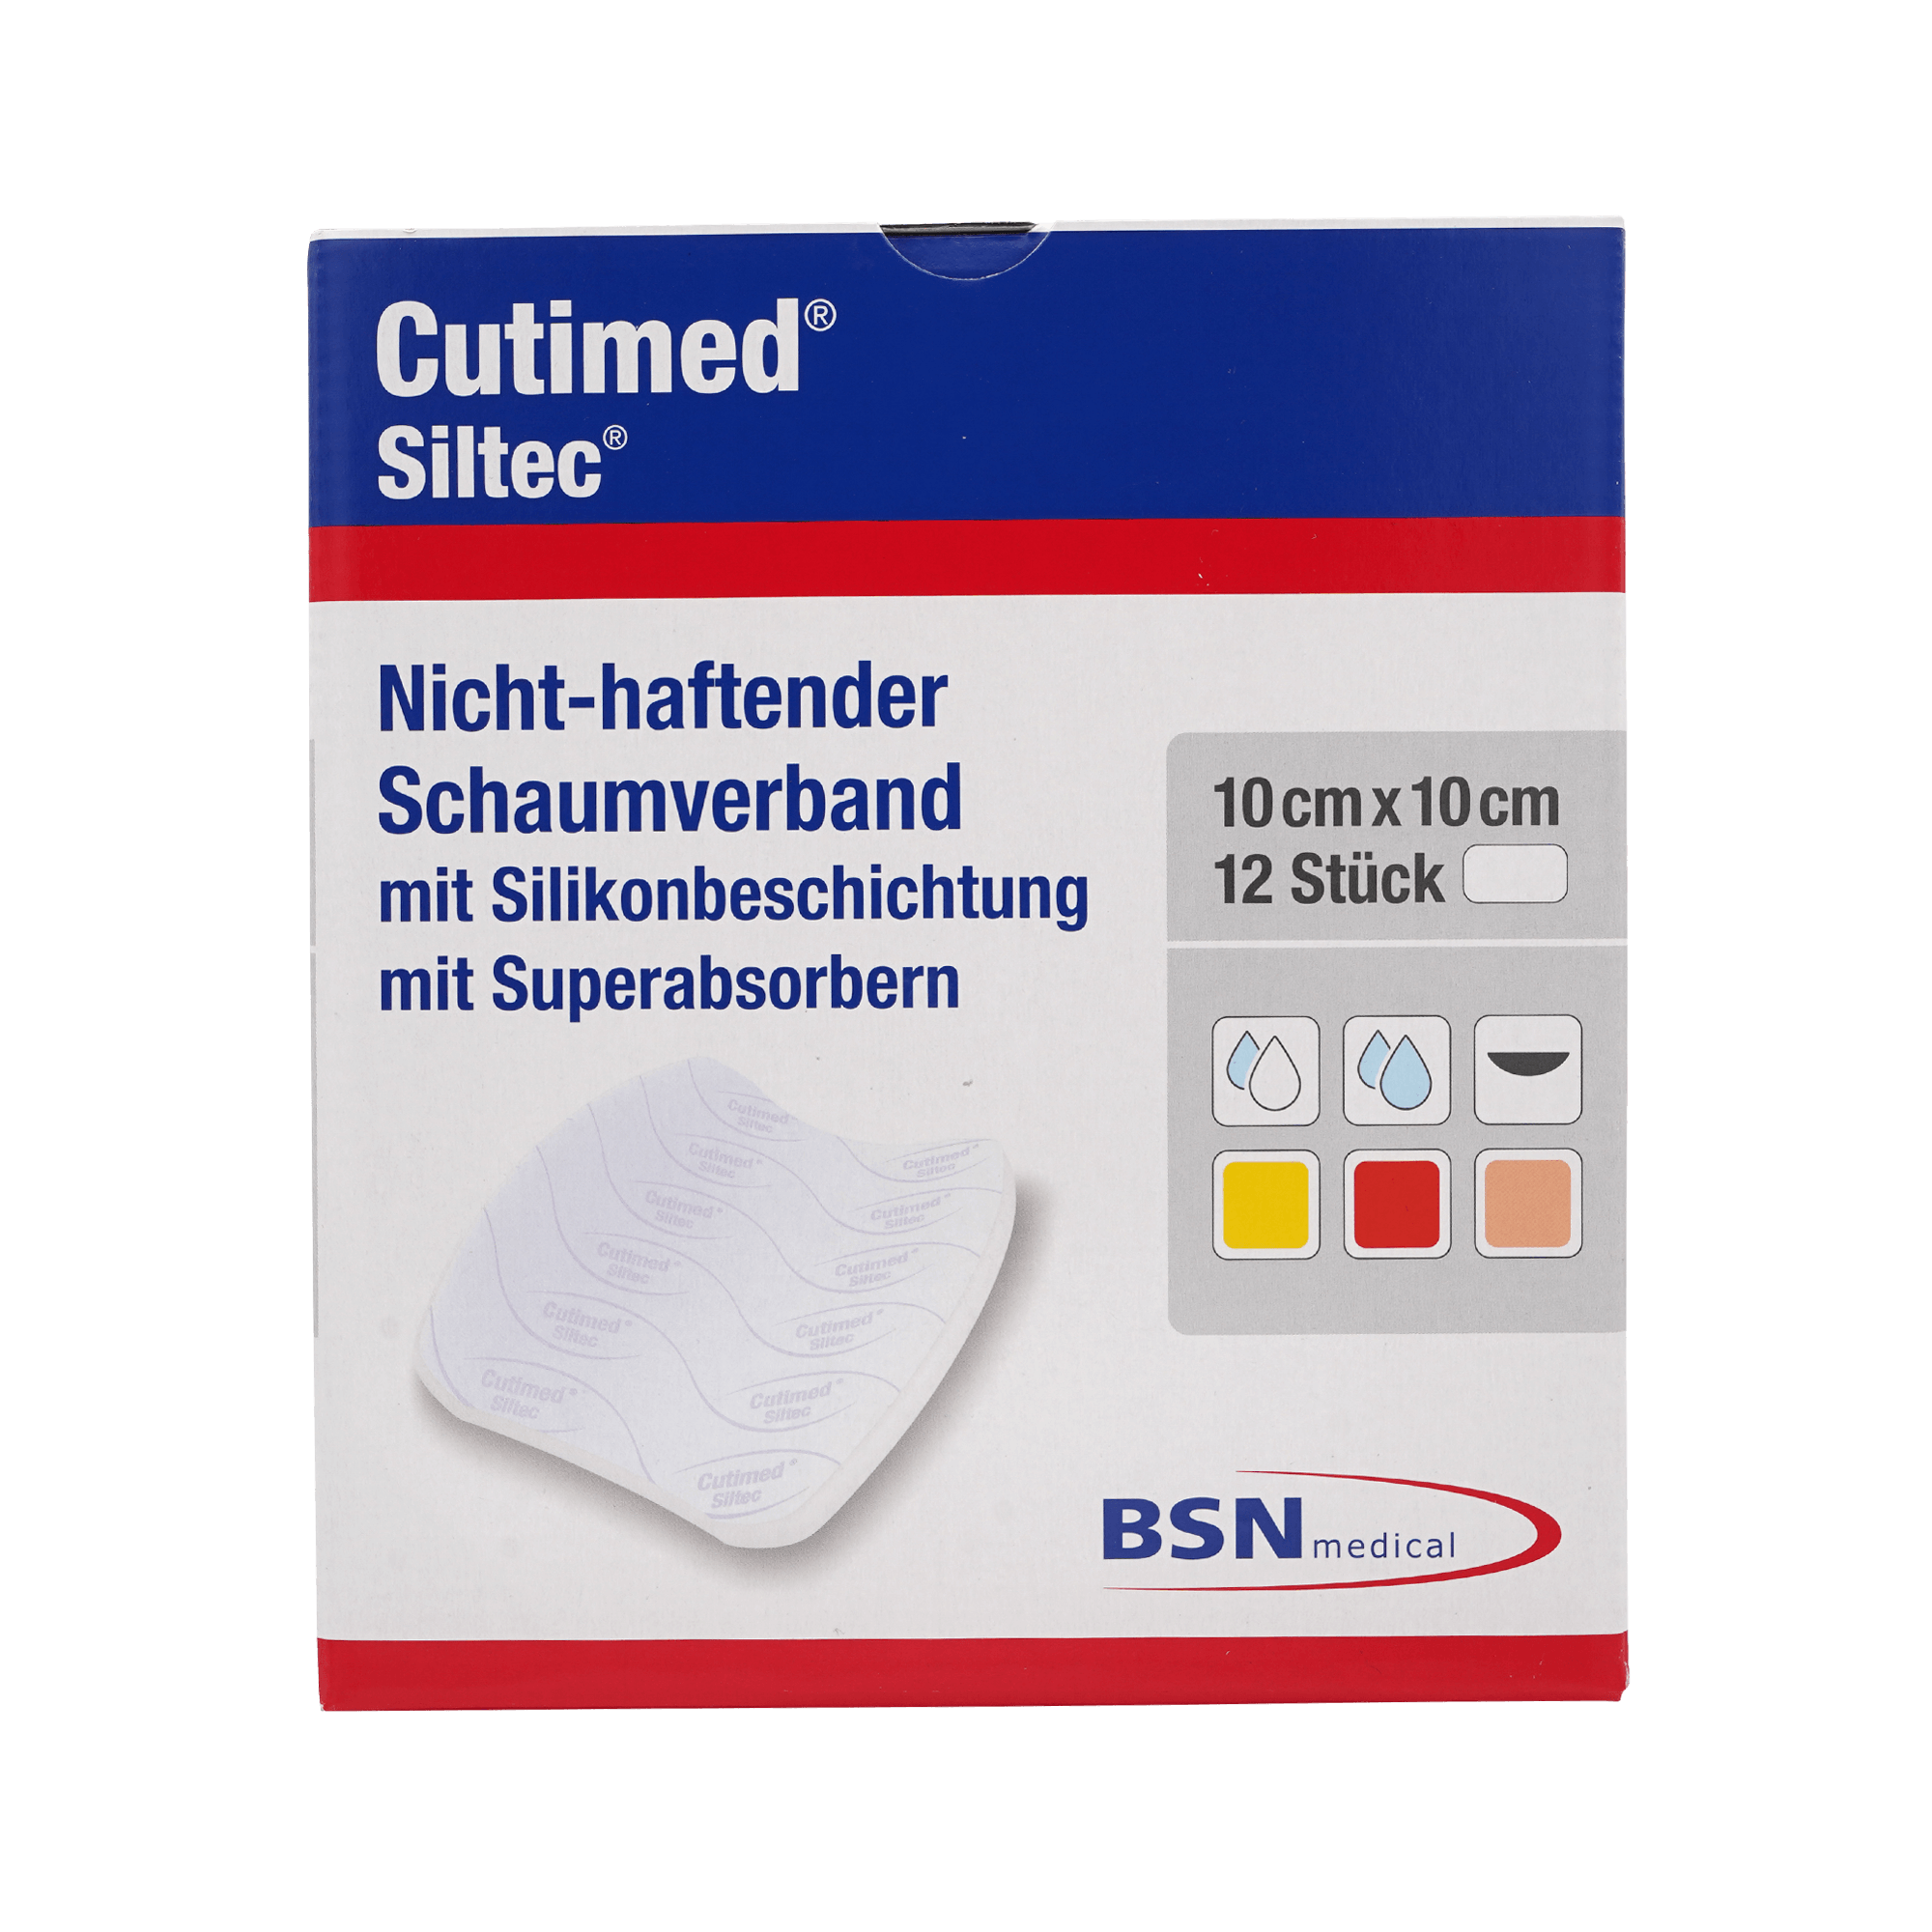 Cutimed® Siltec® 10x10 cm Nicht-haftender Schaumverband